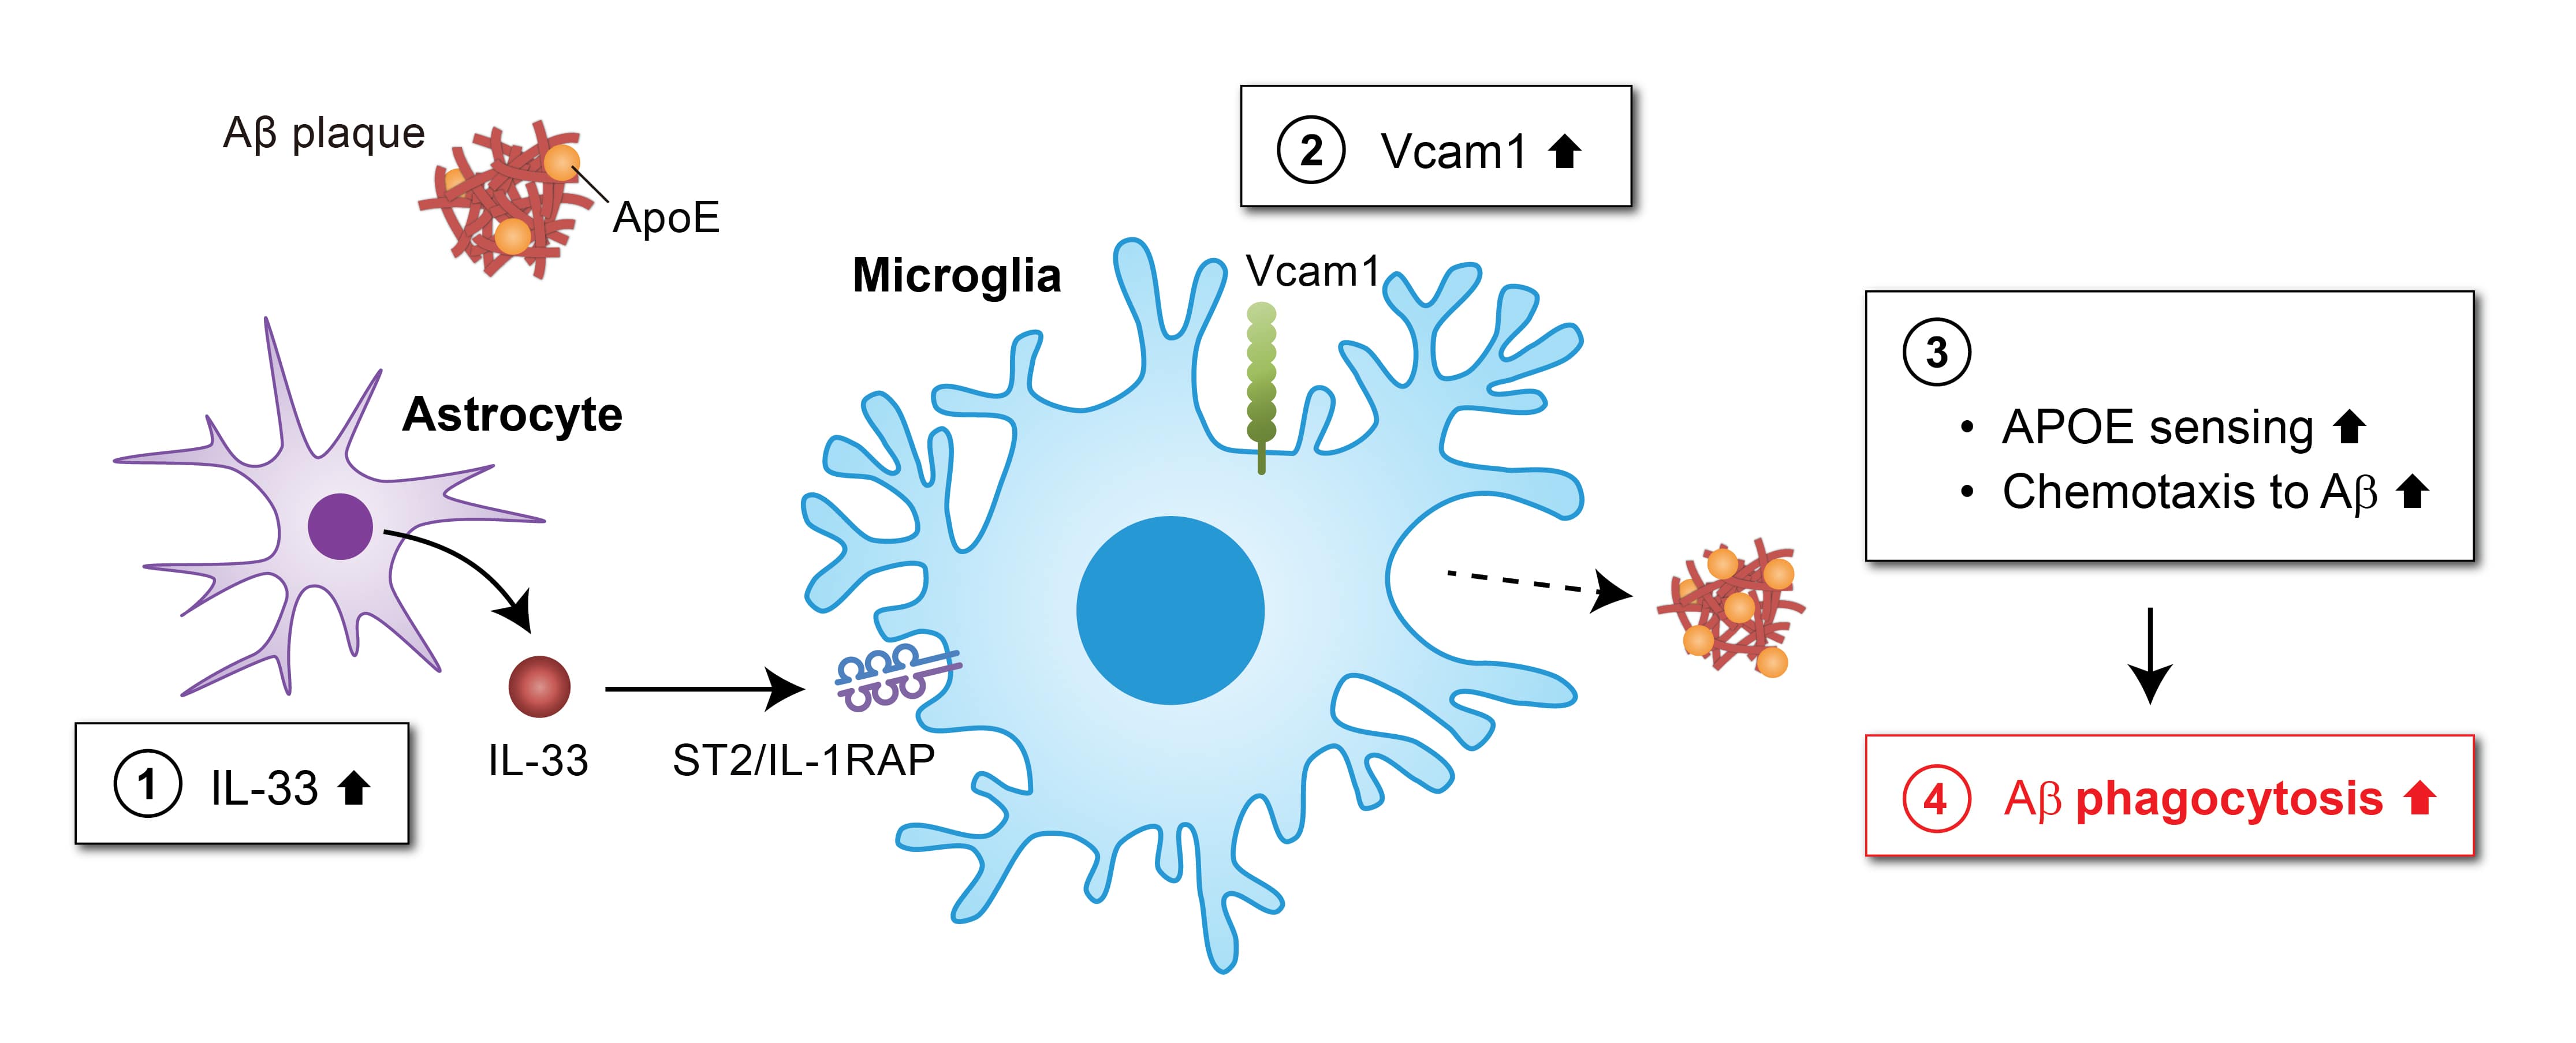 该图阐明了VCAM1-APOE信号通路可作为阿尔兹海默症的潜在治疗靶点。白介素33（IL-33）增加小胶质细胞中VCAM1的表达 (2)，诱导小胶质细胞向与APOE相结合的淀粉样蛋白（Aβ）沉积迁移 (3)，从而促进小胶质细胞对大脑中Aβ斑块的清除 (4)。